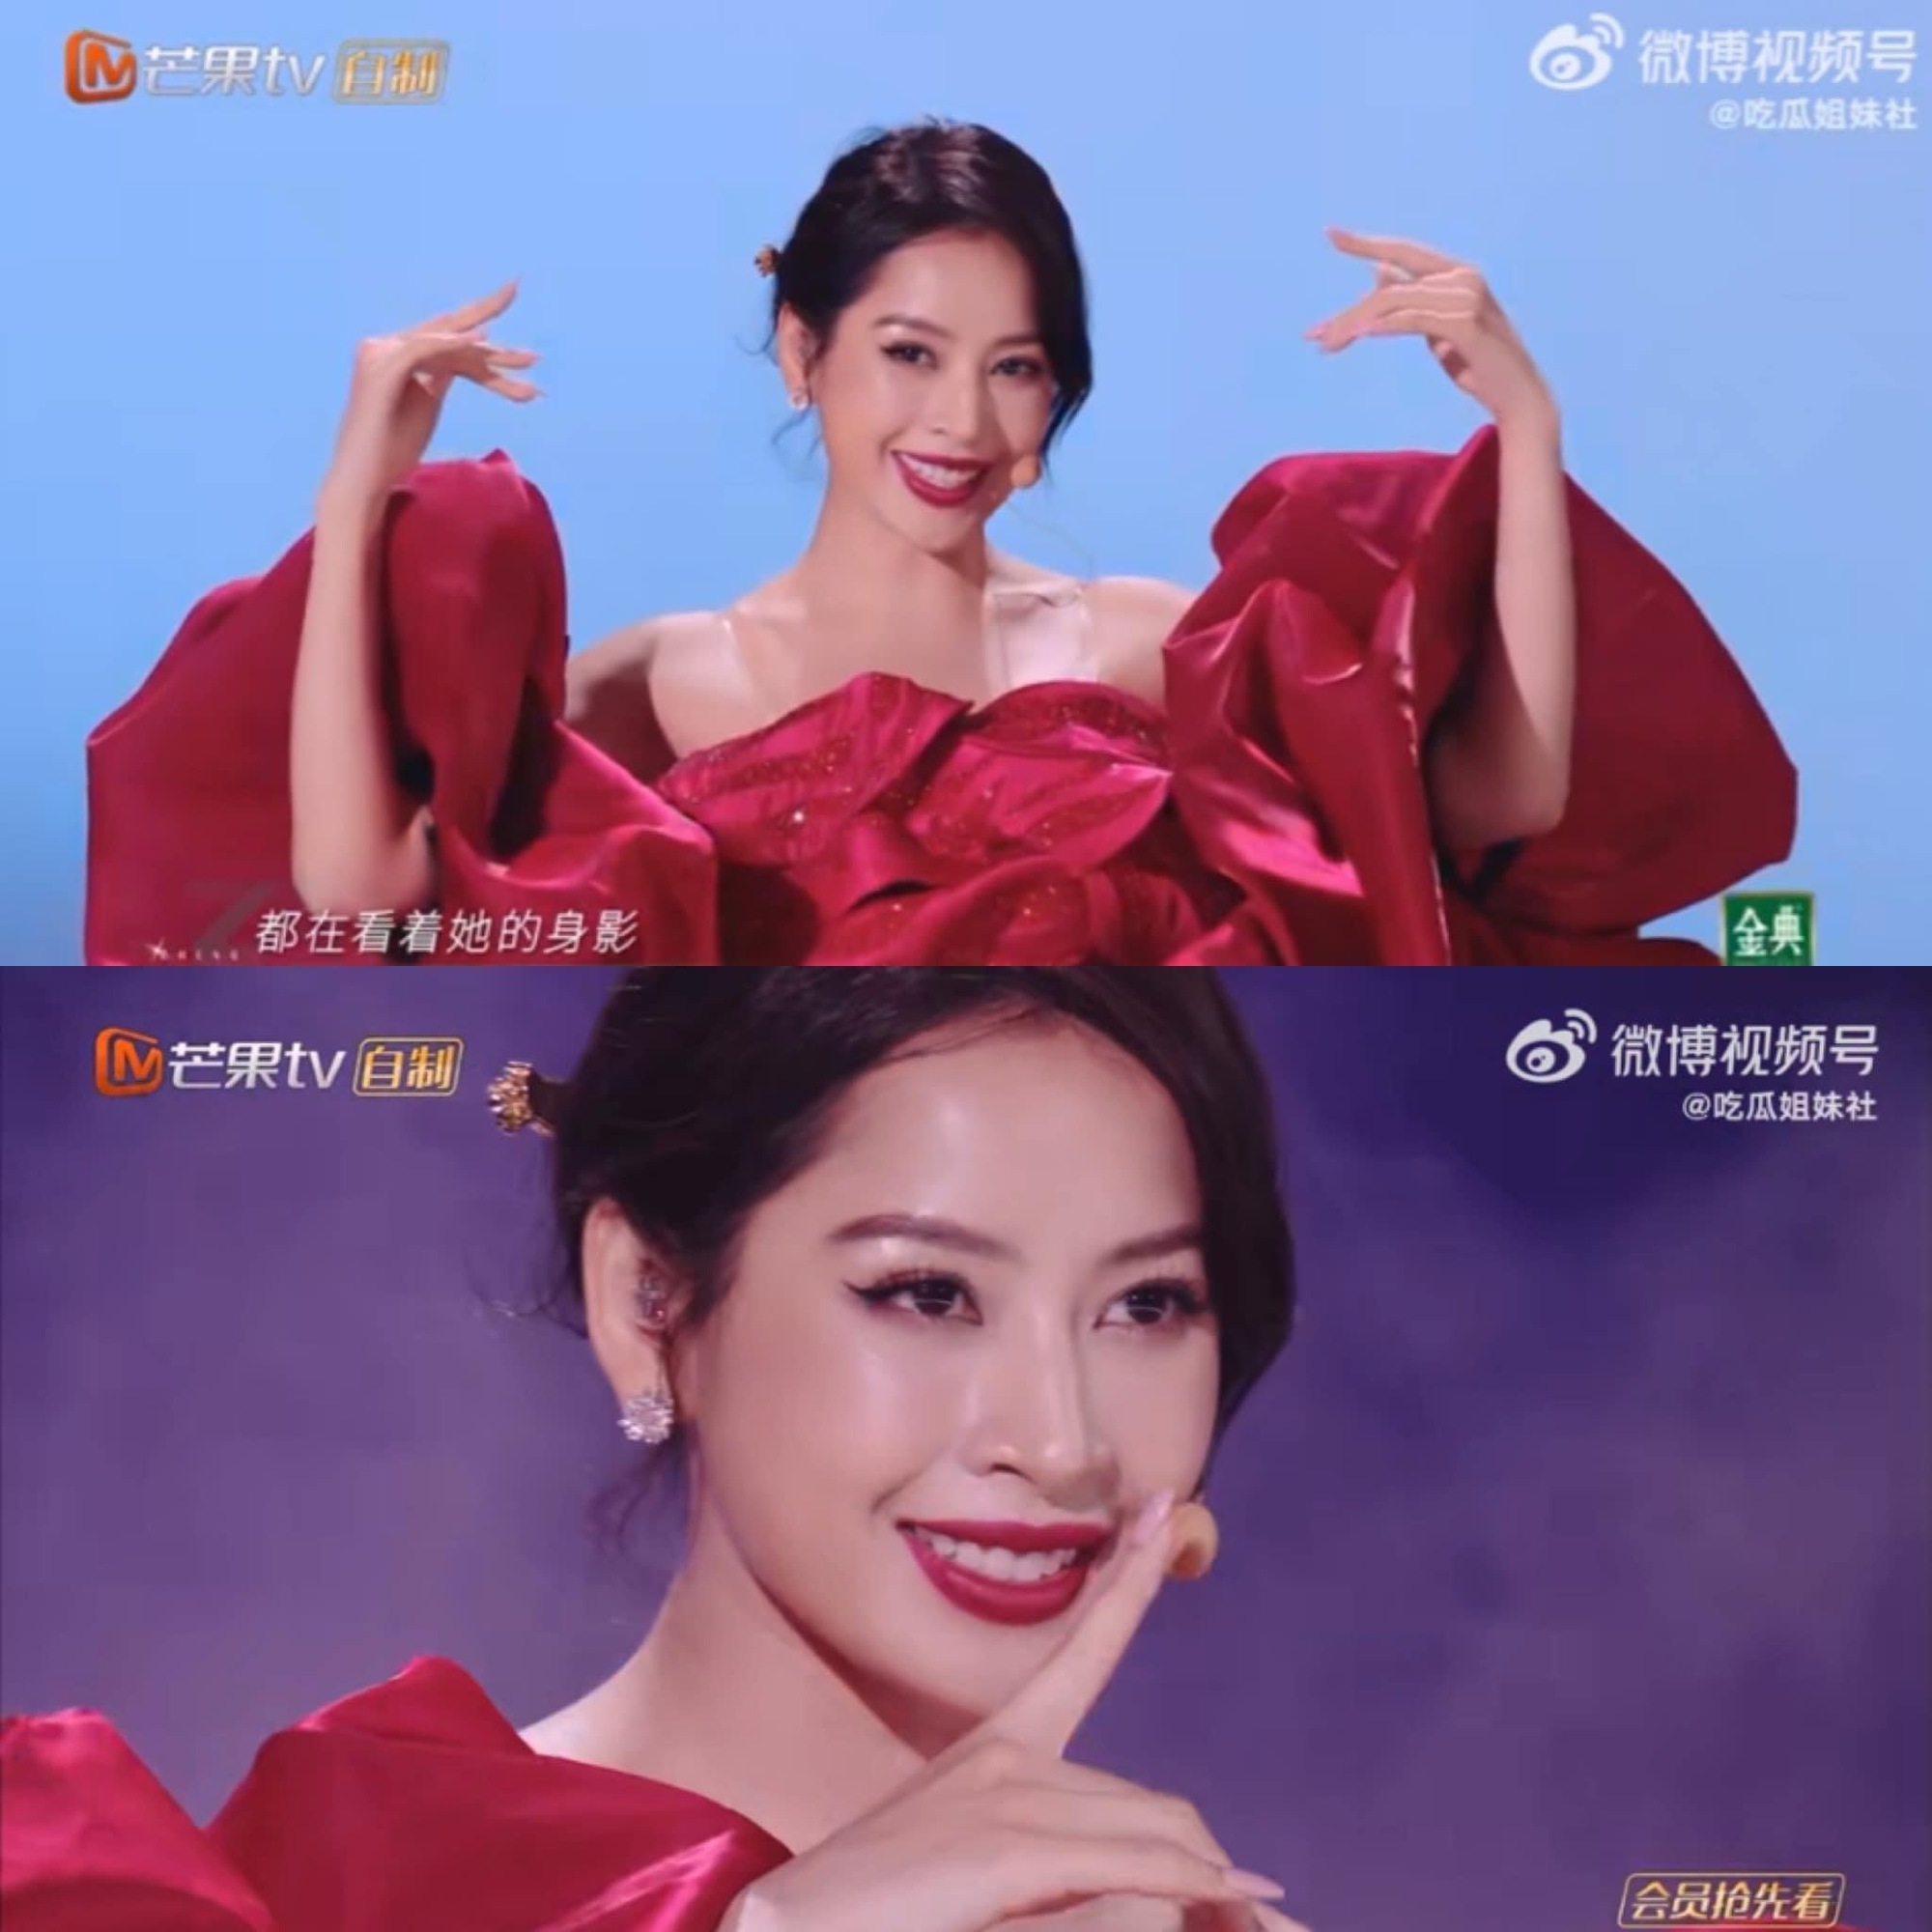 Blogger 9 triệu người theo dõi ở xứ Trung khen Chi Pu "thực sự xinh đẹp", dân tình ủng hộ 100% nhưng giọng hát không thể khen được! - Ảnh 3.